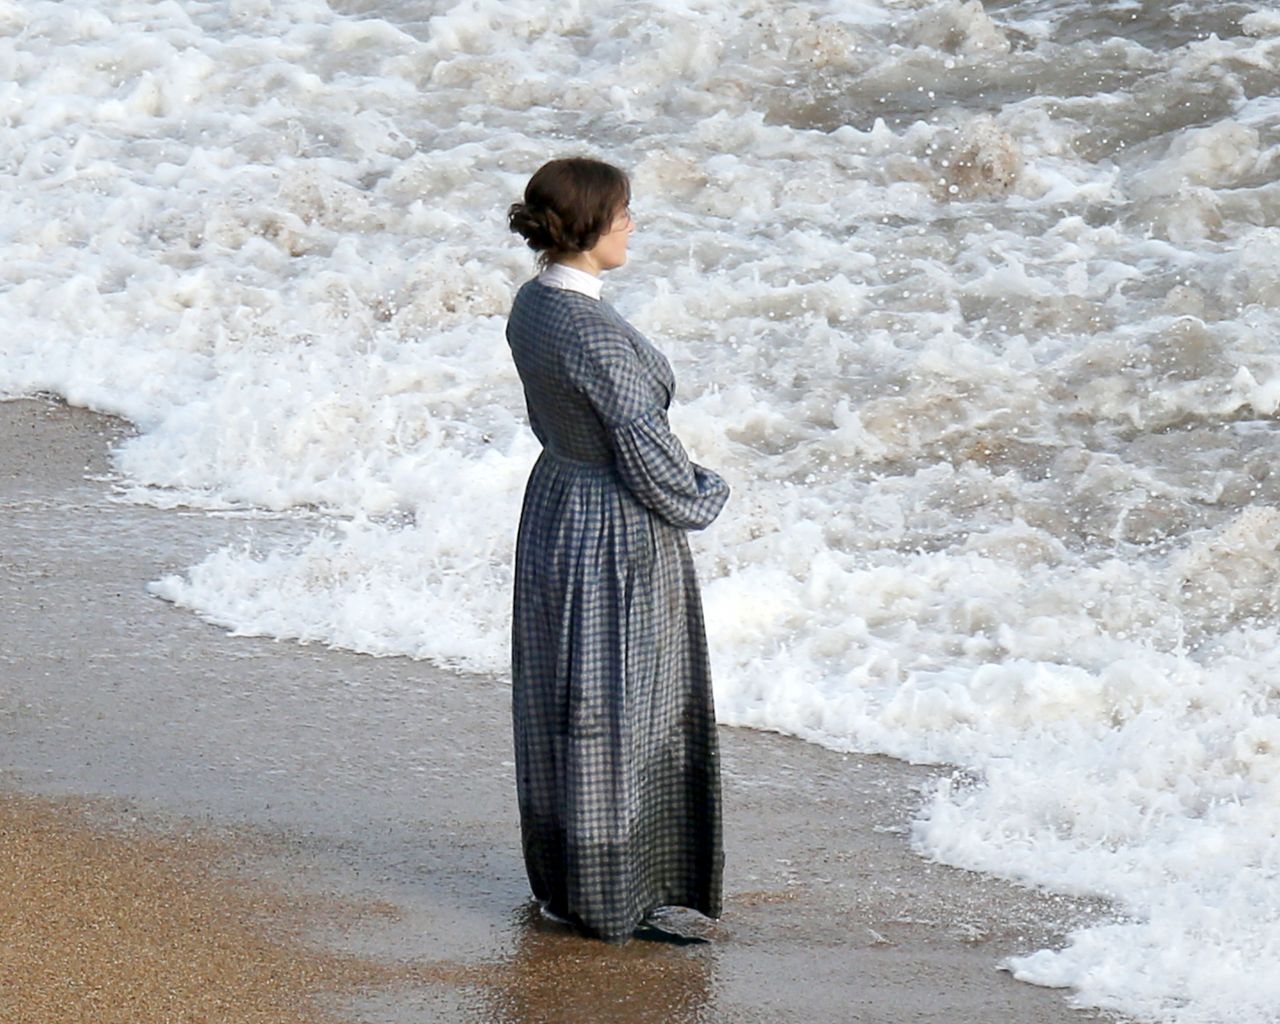 Кейт уинслет на пляже